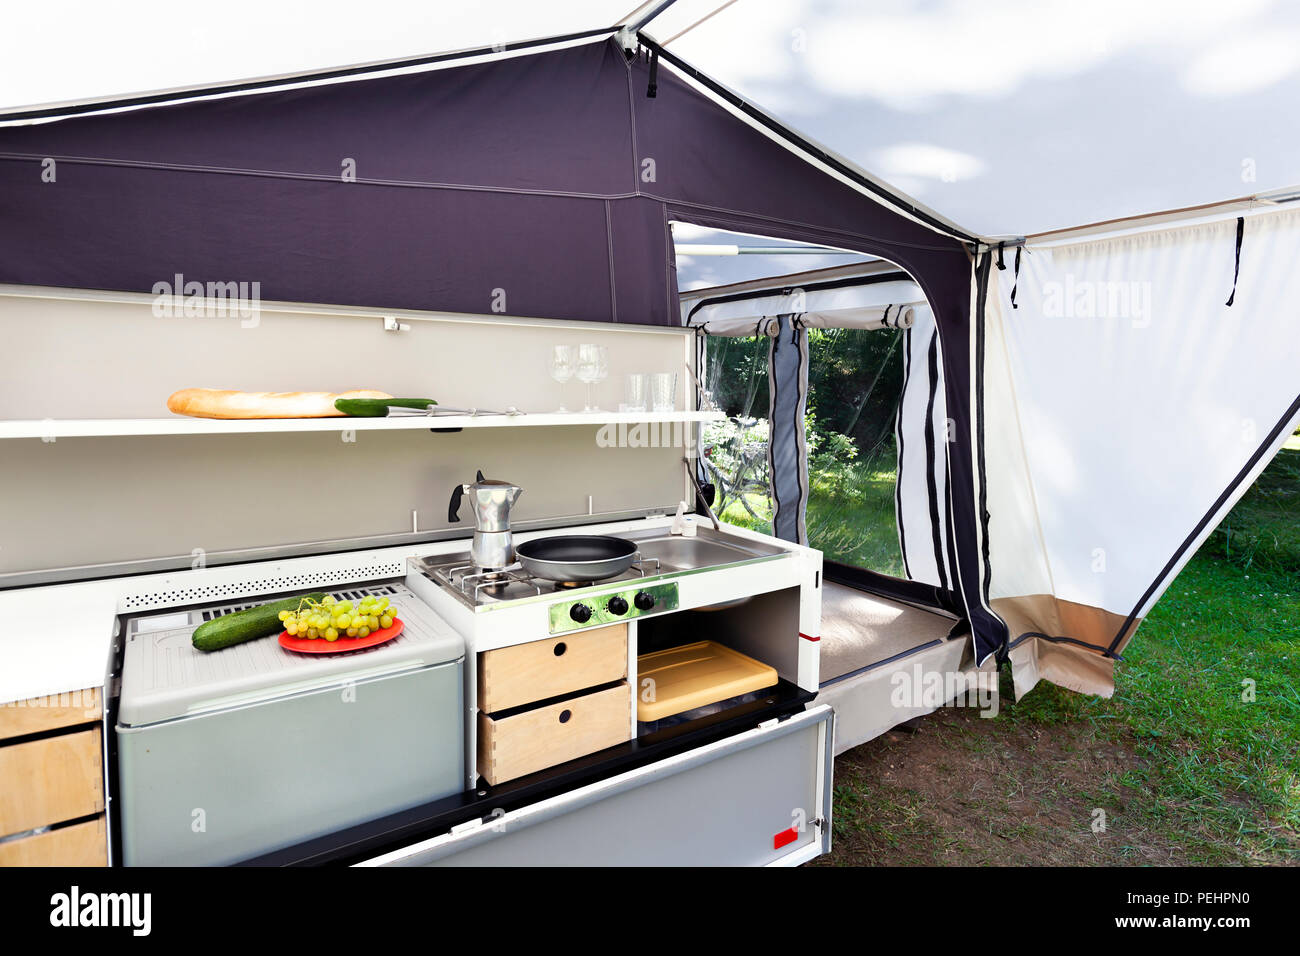 Camping oder Glamping mit einer Küche in einem Zelt Stockfotografie - Alamy